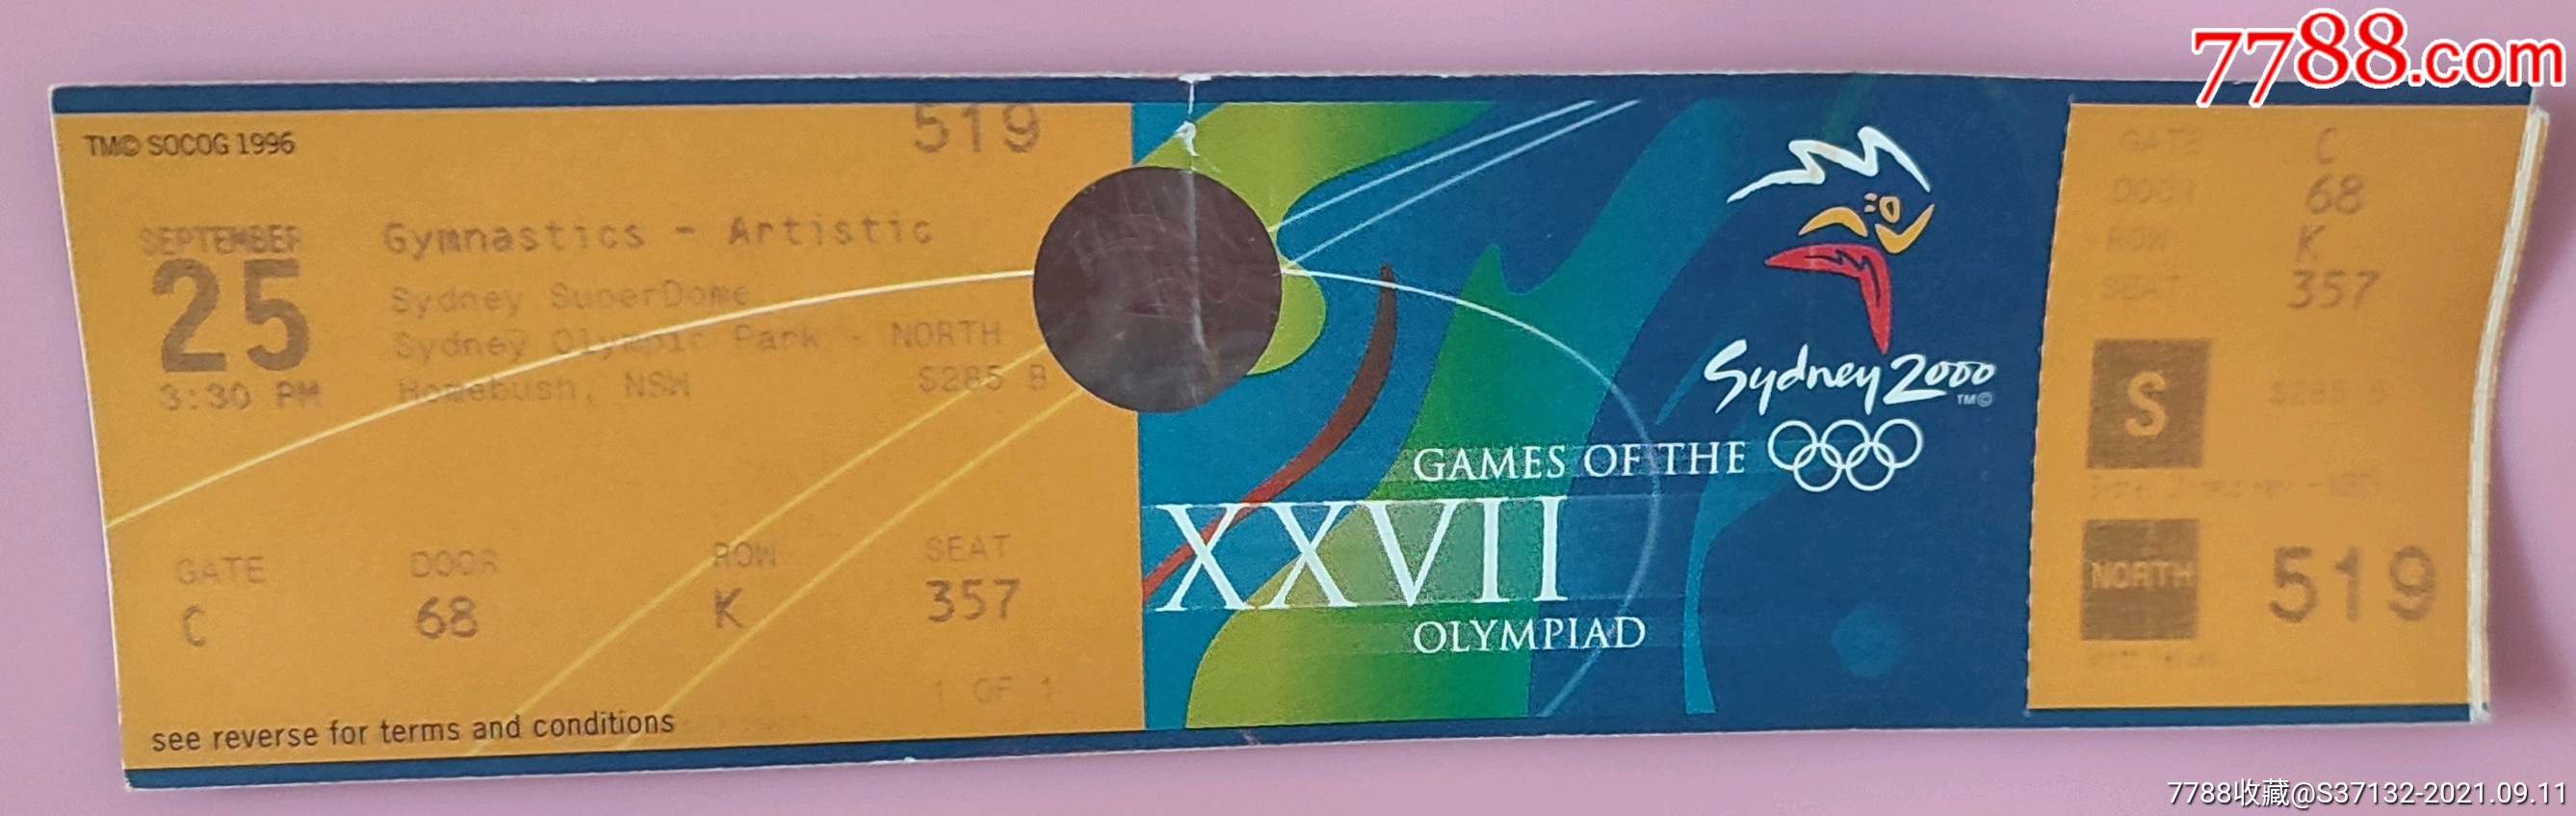 伦敦奥运会门票图片